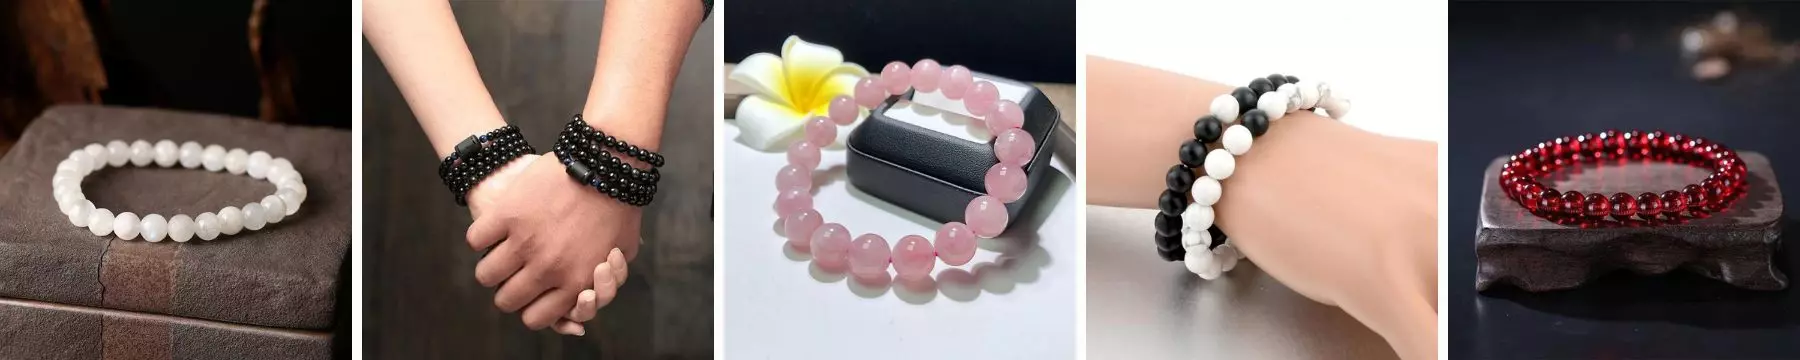 healing bracelets